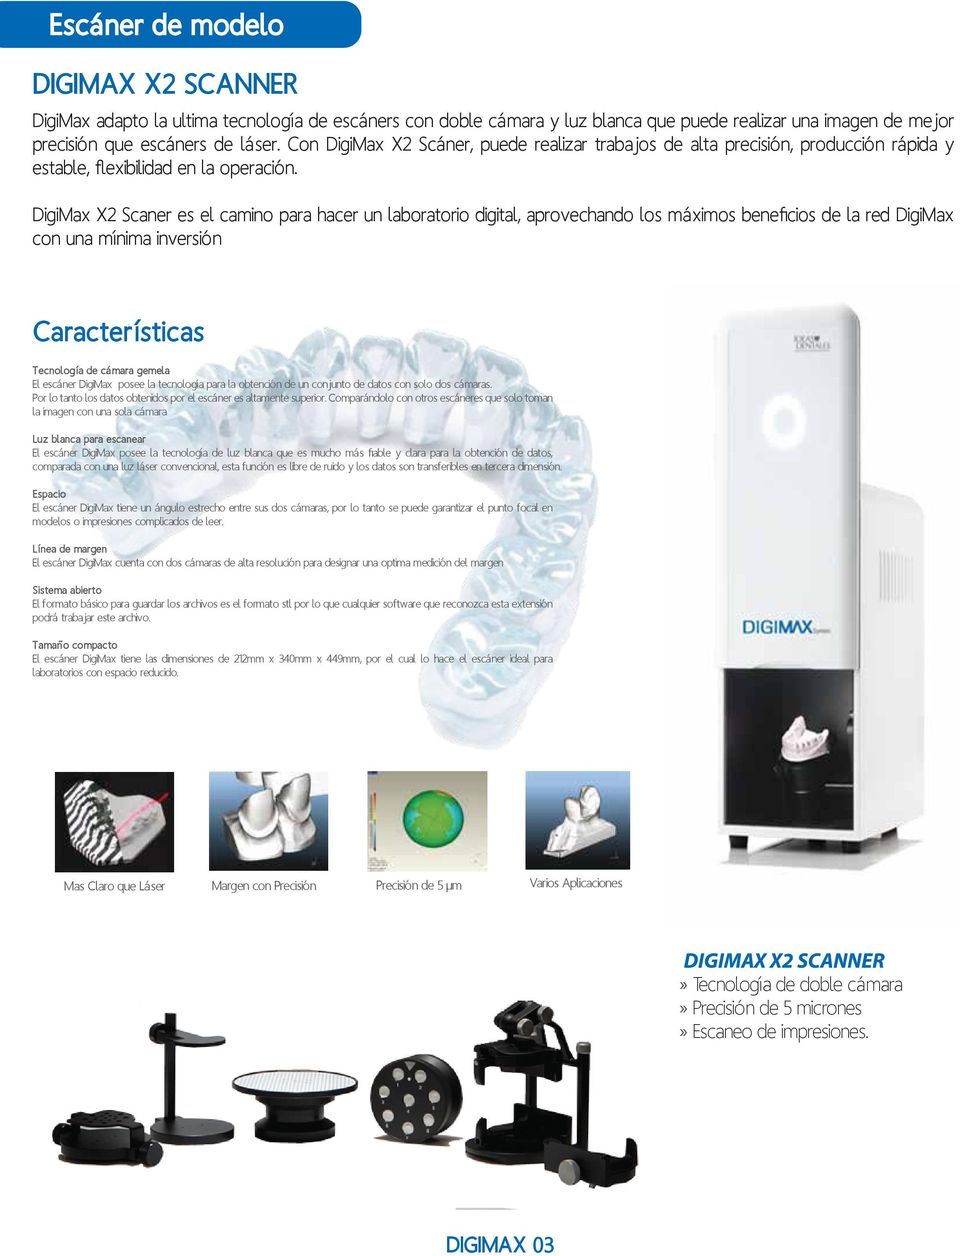 DigiMax X2 Scaner es el camino para hacer un laboratorio digital, aprovechando los máximos beneficios de la red DigiMax con una mínima inversión Características Tecnología de cámara gemela El escáner